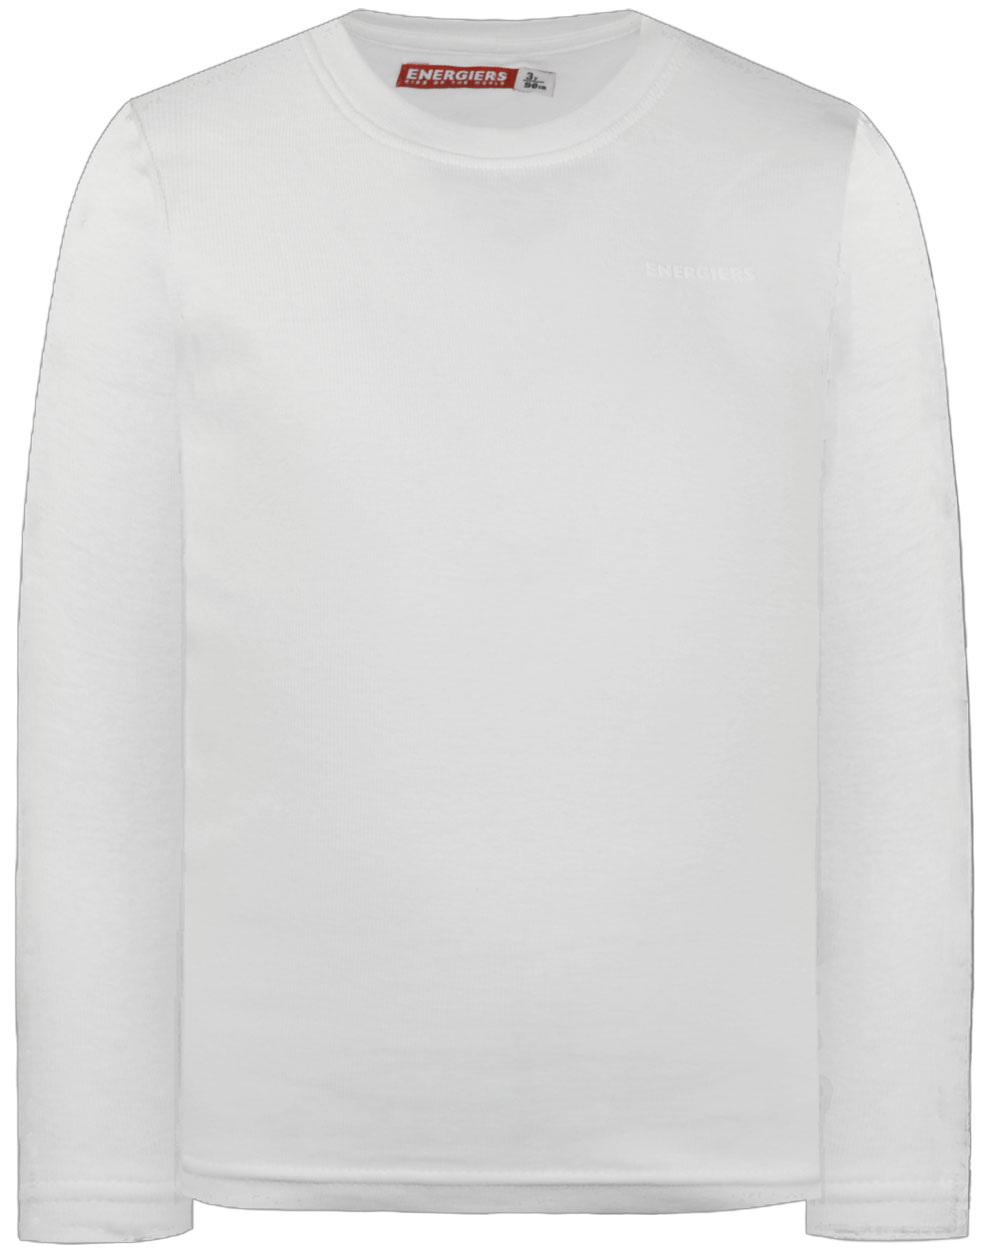 Βαμβακερή μπλούζα με λαιμόκοψη Energiers Basic Line για αγόρι | ΕΚΡΟΥ ΑΓΟΡΙ 6-16>Μπλούζα